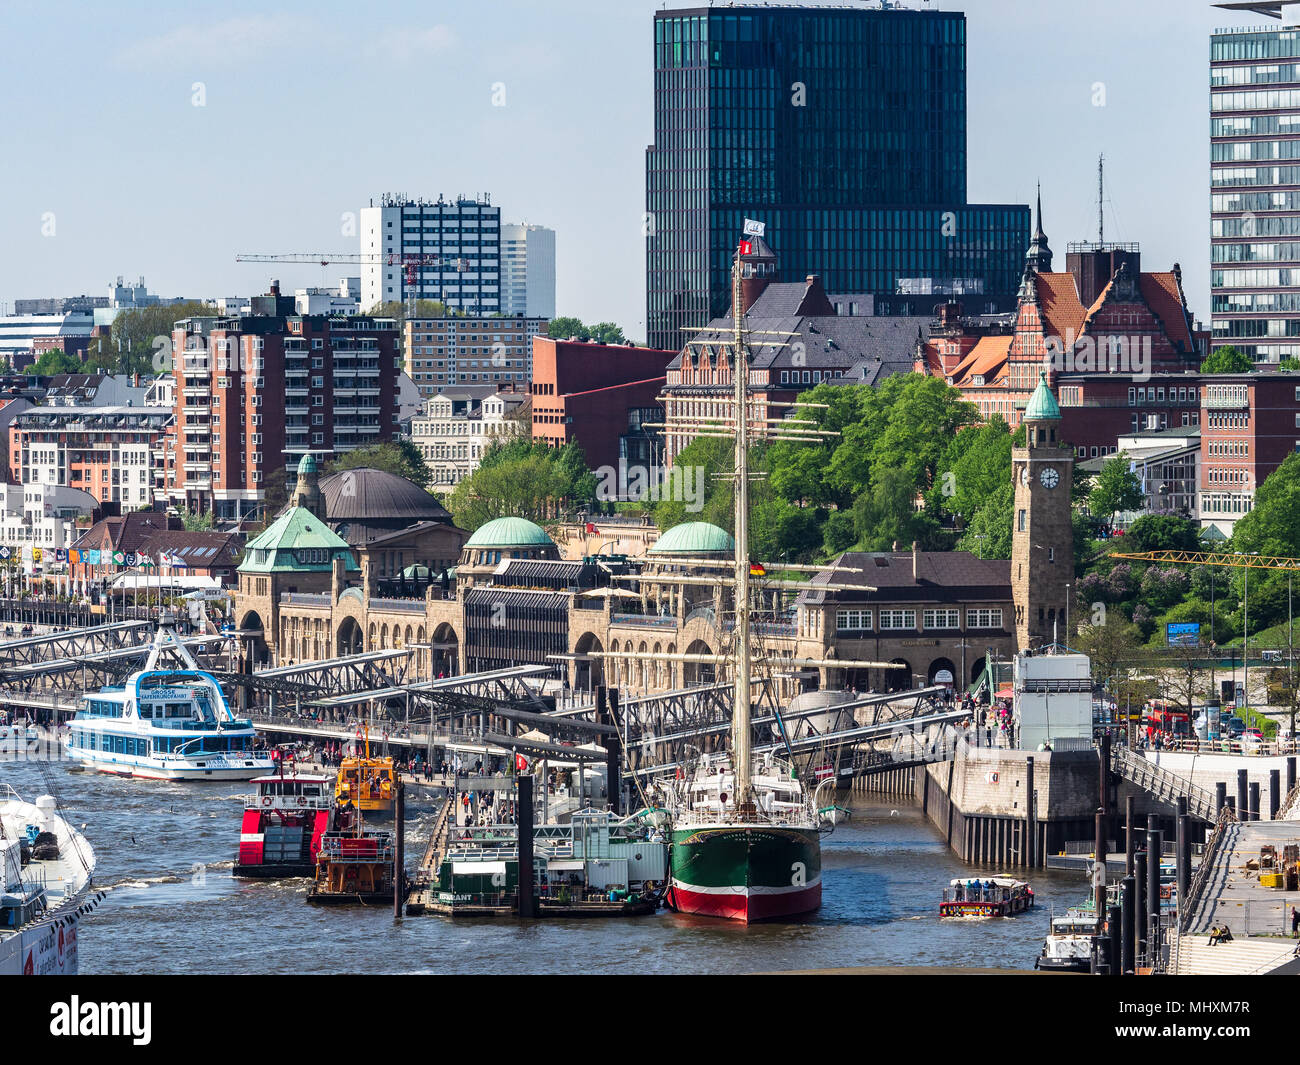 Landungsbrücken Hambourg dock - un quai flottant de 700 mètres de long sur l'Elbe dans le centre de Hambourg Banque D'Images